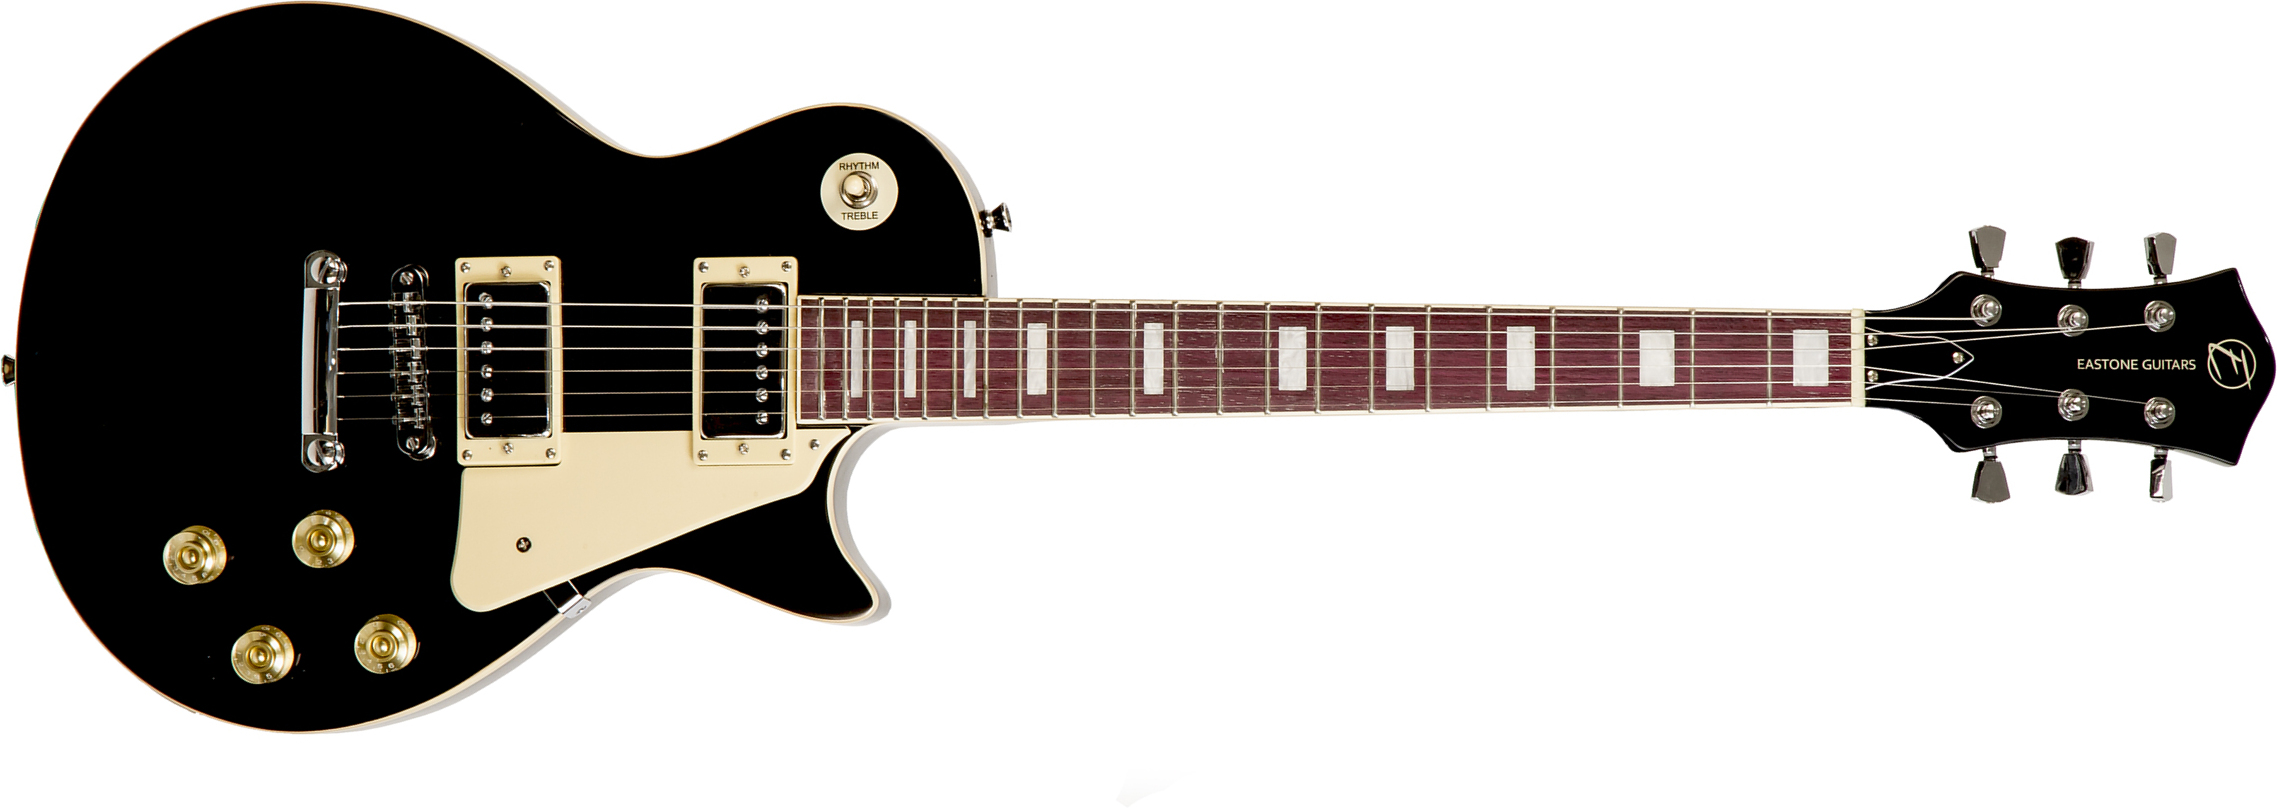 Eastone Lp100 Blk Hh Ht Pur - Black - Single cut electric guitar - Main picture